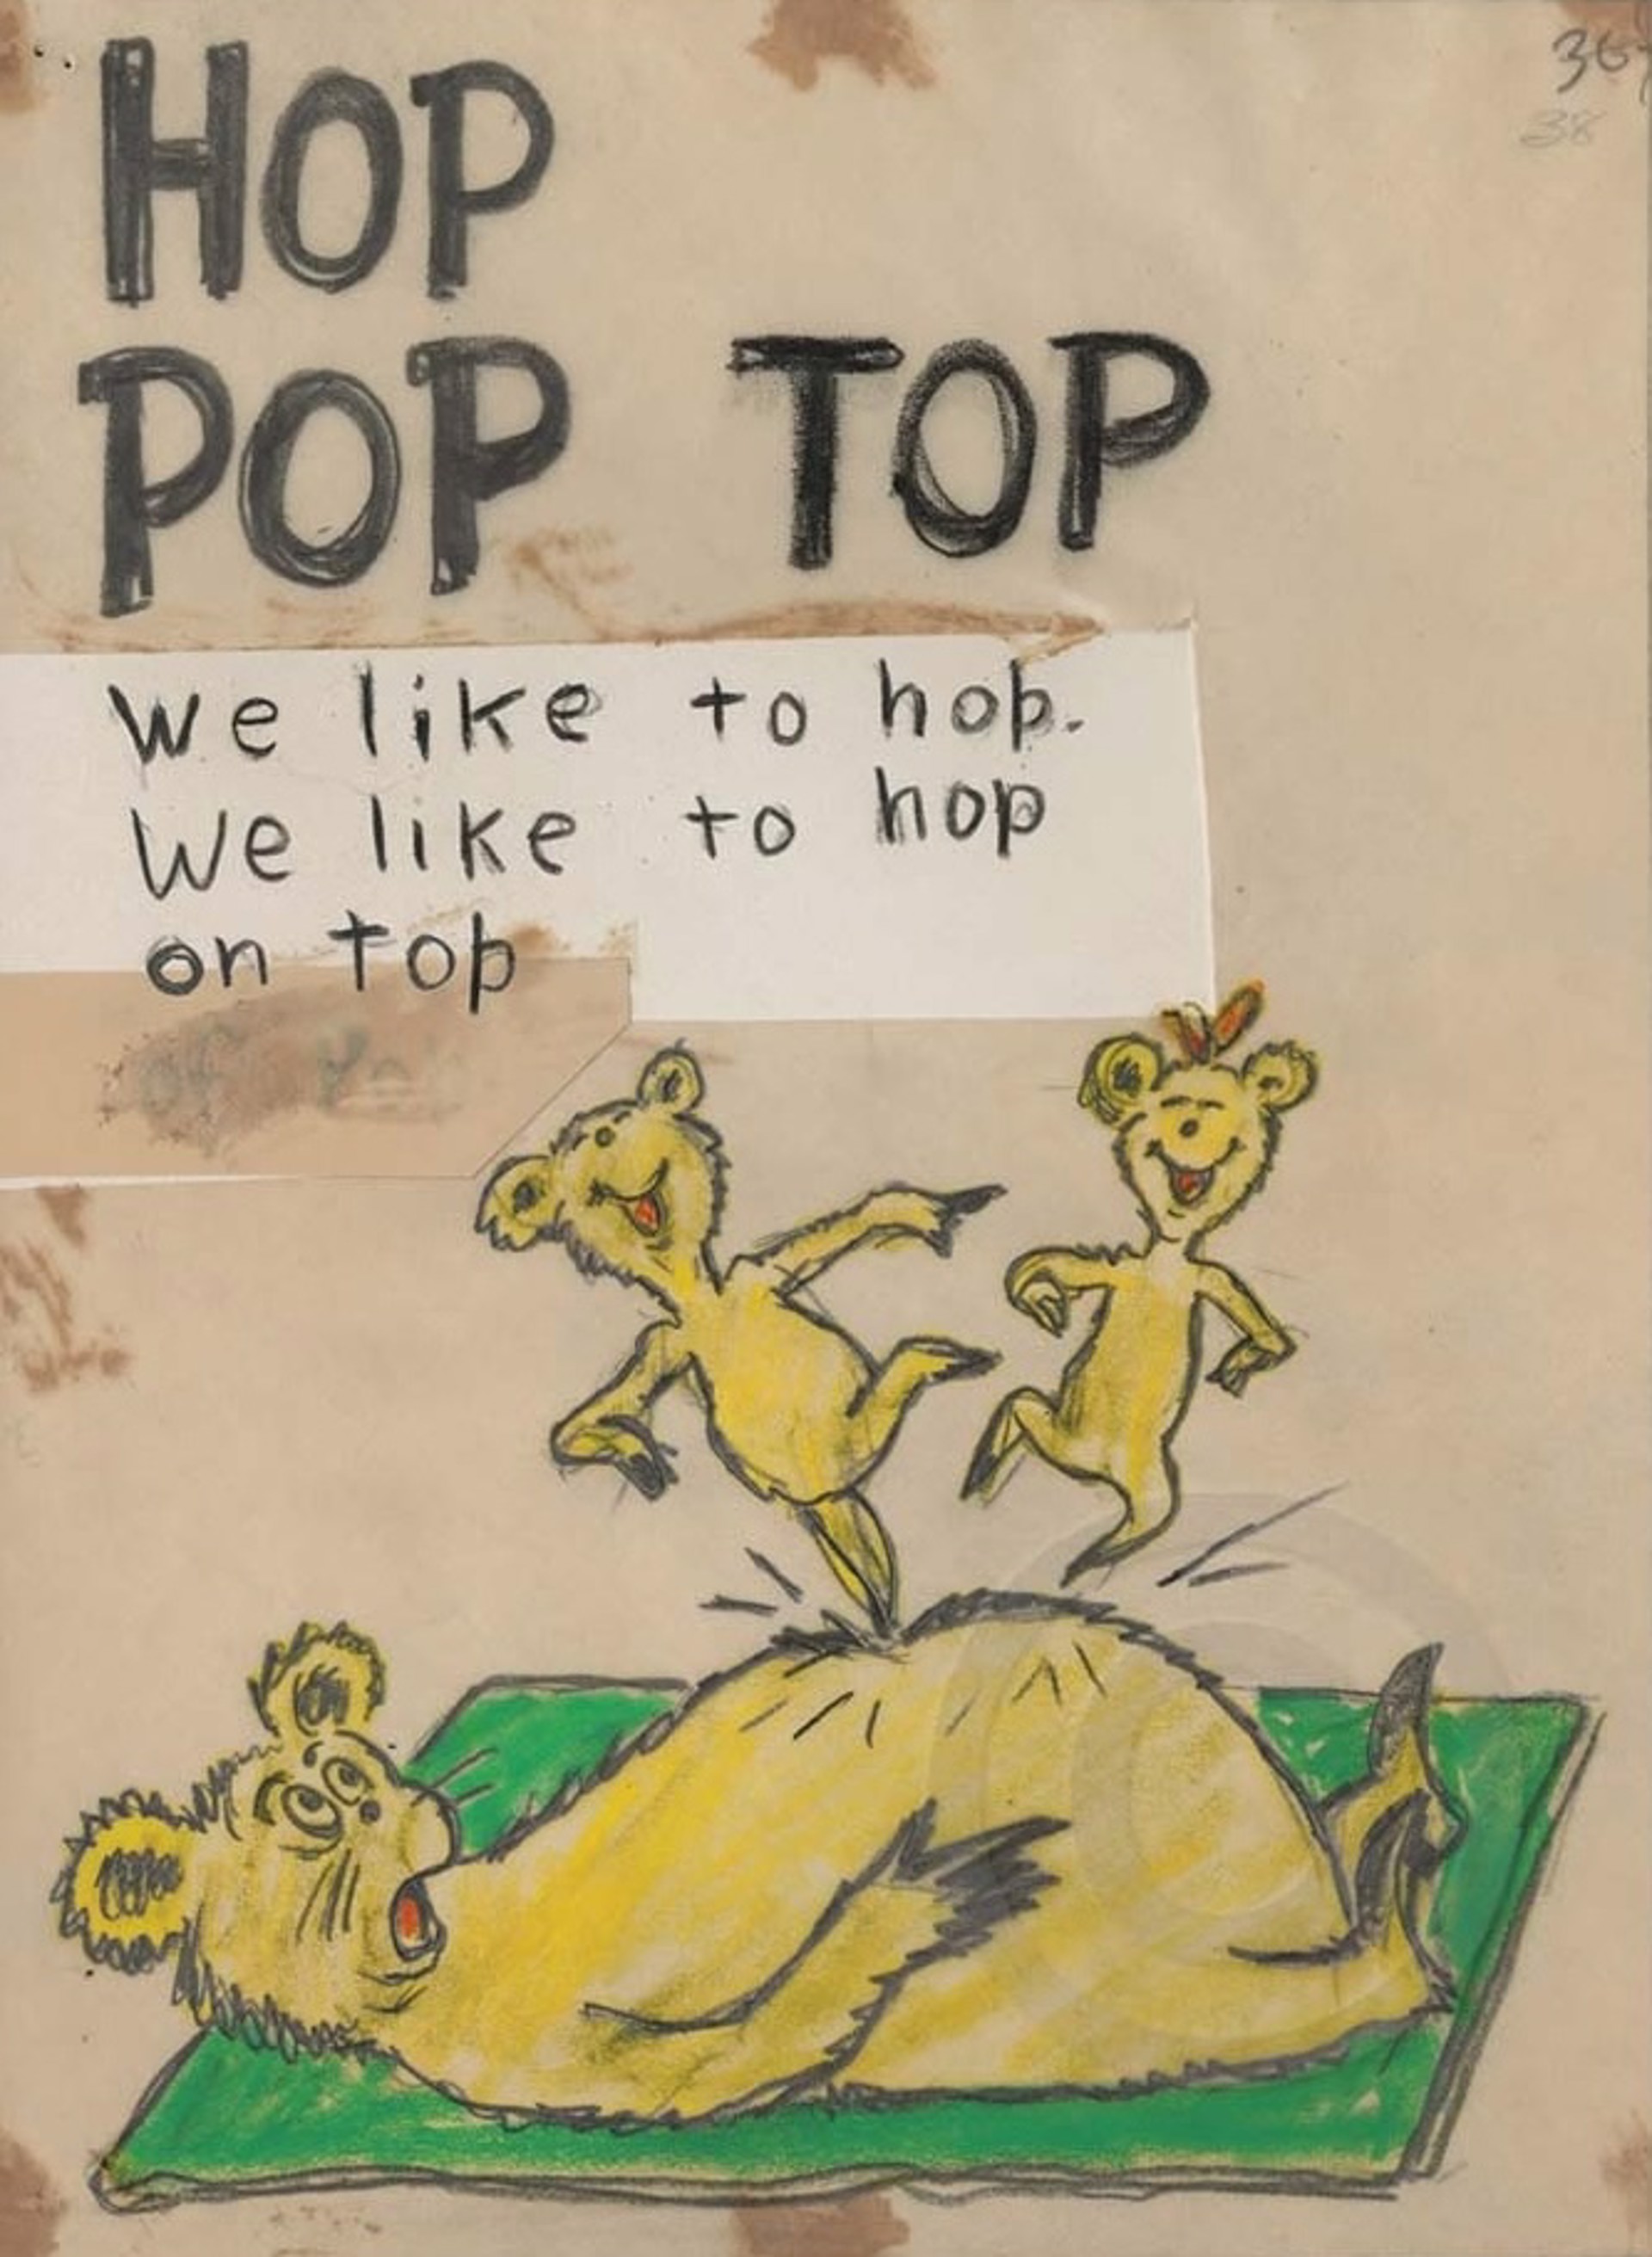 Hop Pop Top by Dr. Seuss